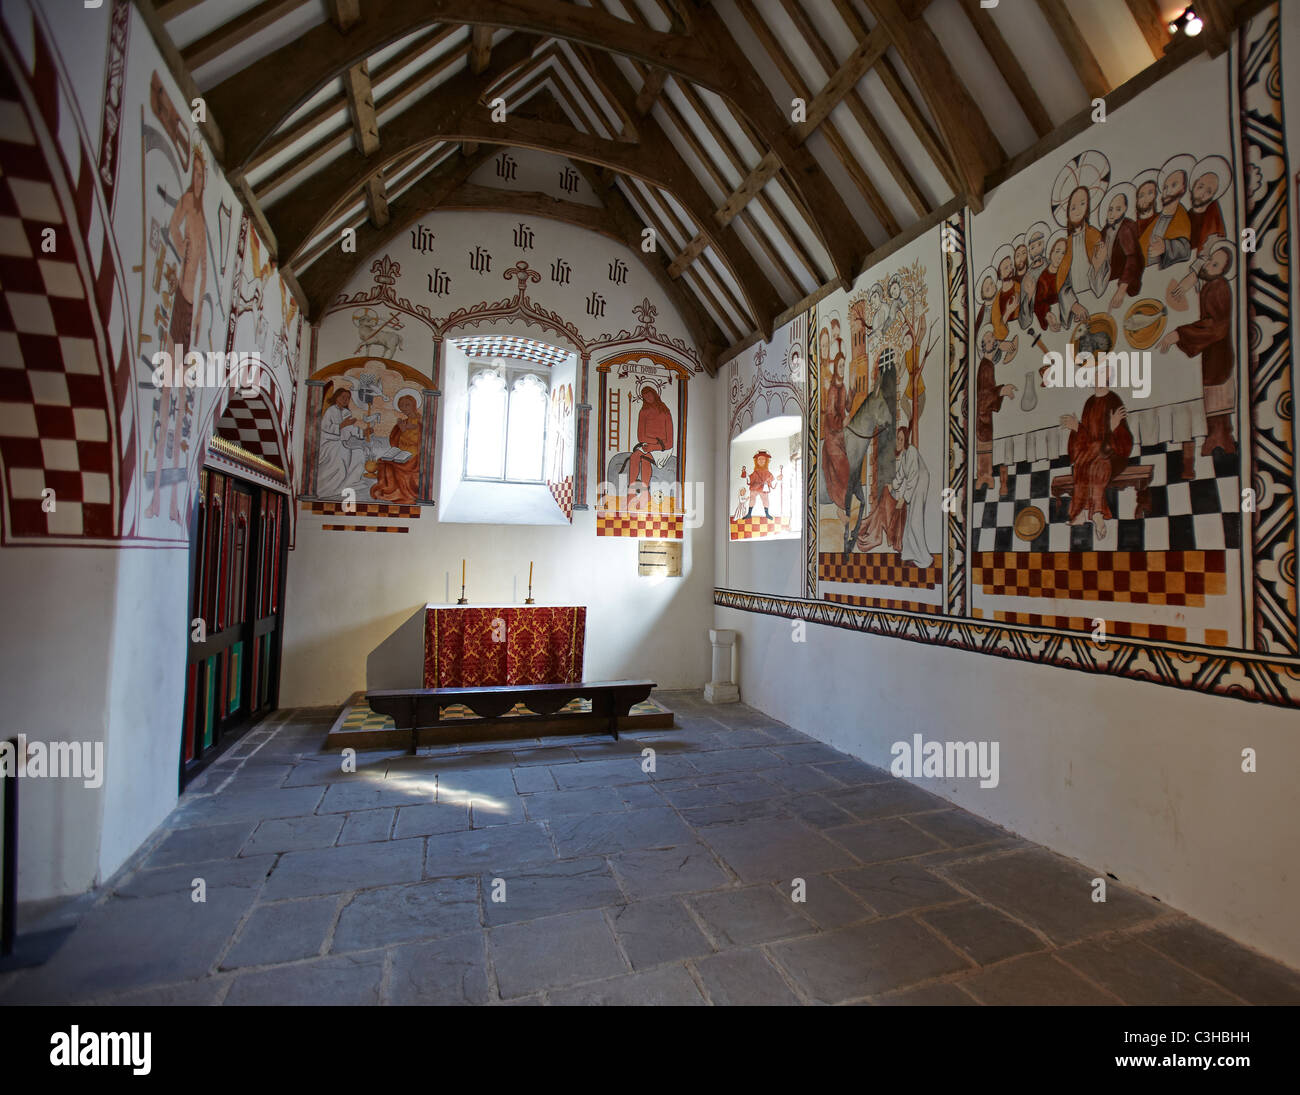 L'intérieur de l'église St Teilo, St Fagans National History Museum, St Fagans, Pays de Galles, Royaume-Uni Banque D'Images